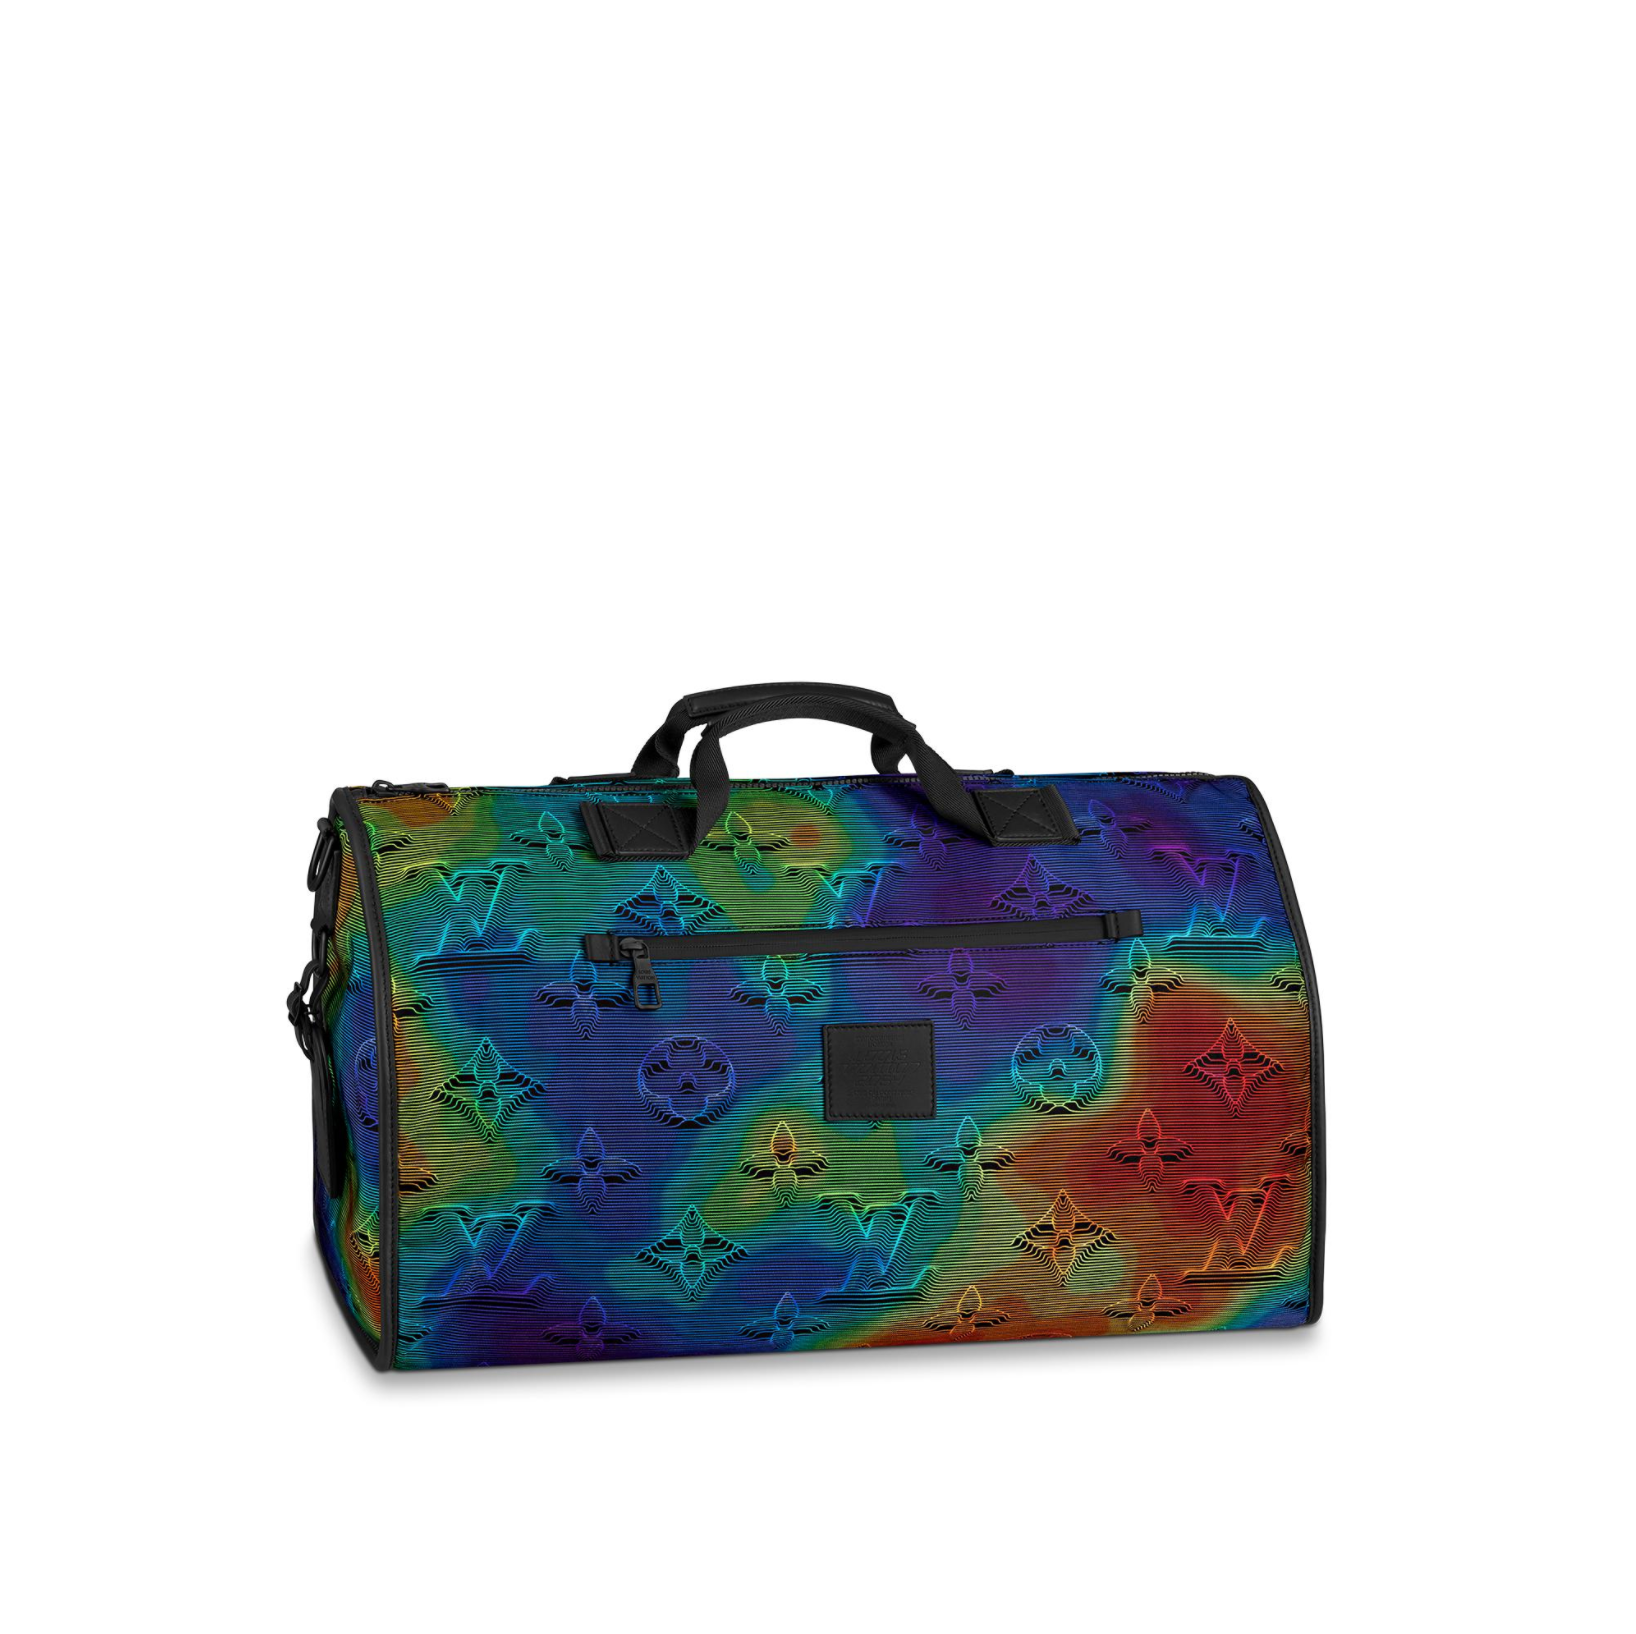 Louis Vuitton 2054 Reversible Keepall 50 Traveler Duffle Bag (WRXZ